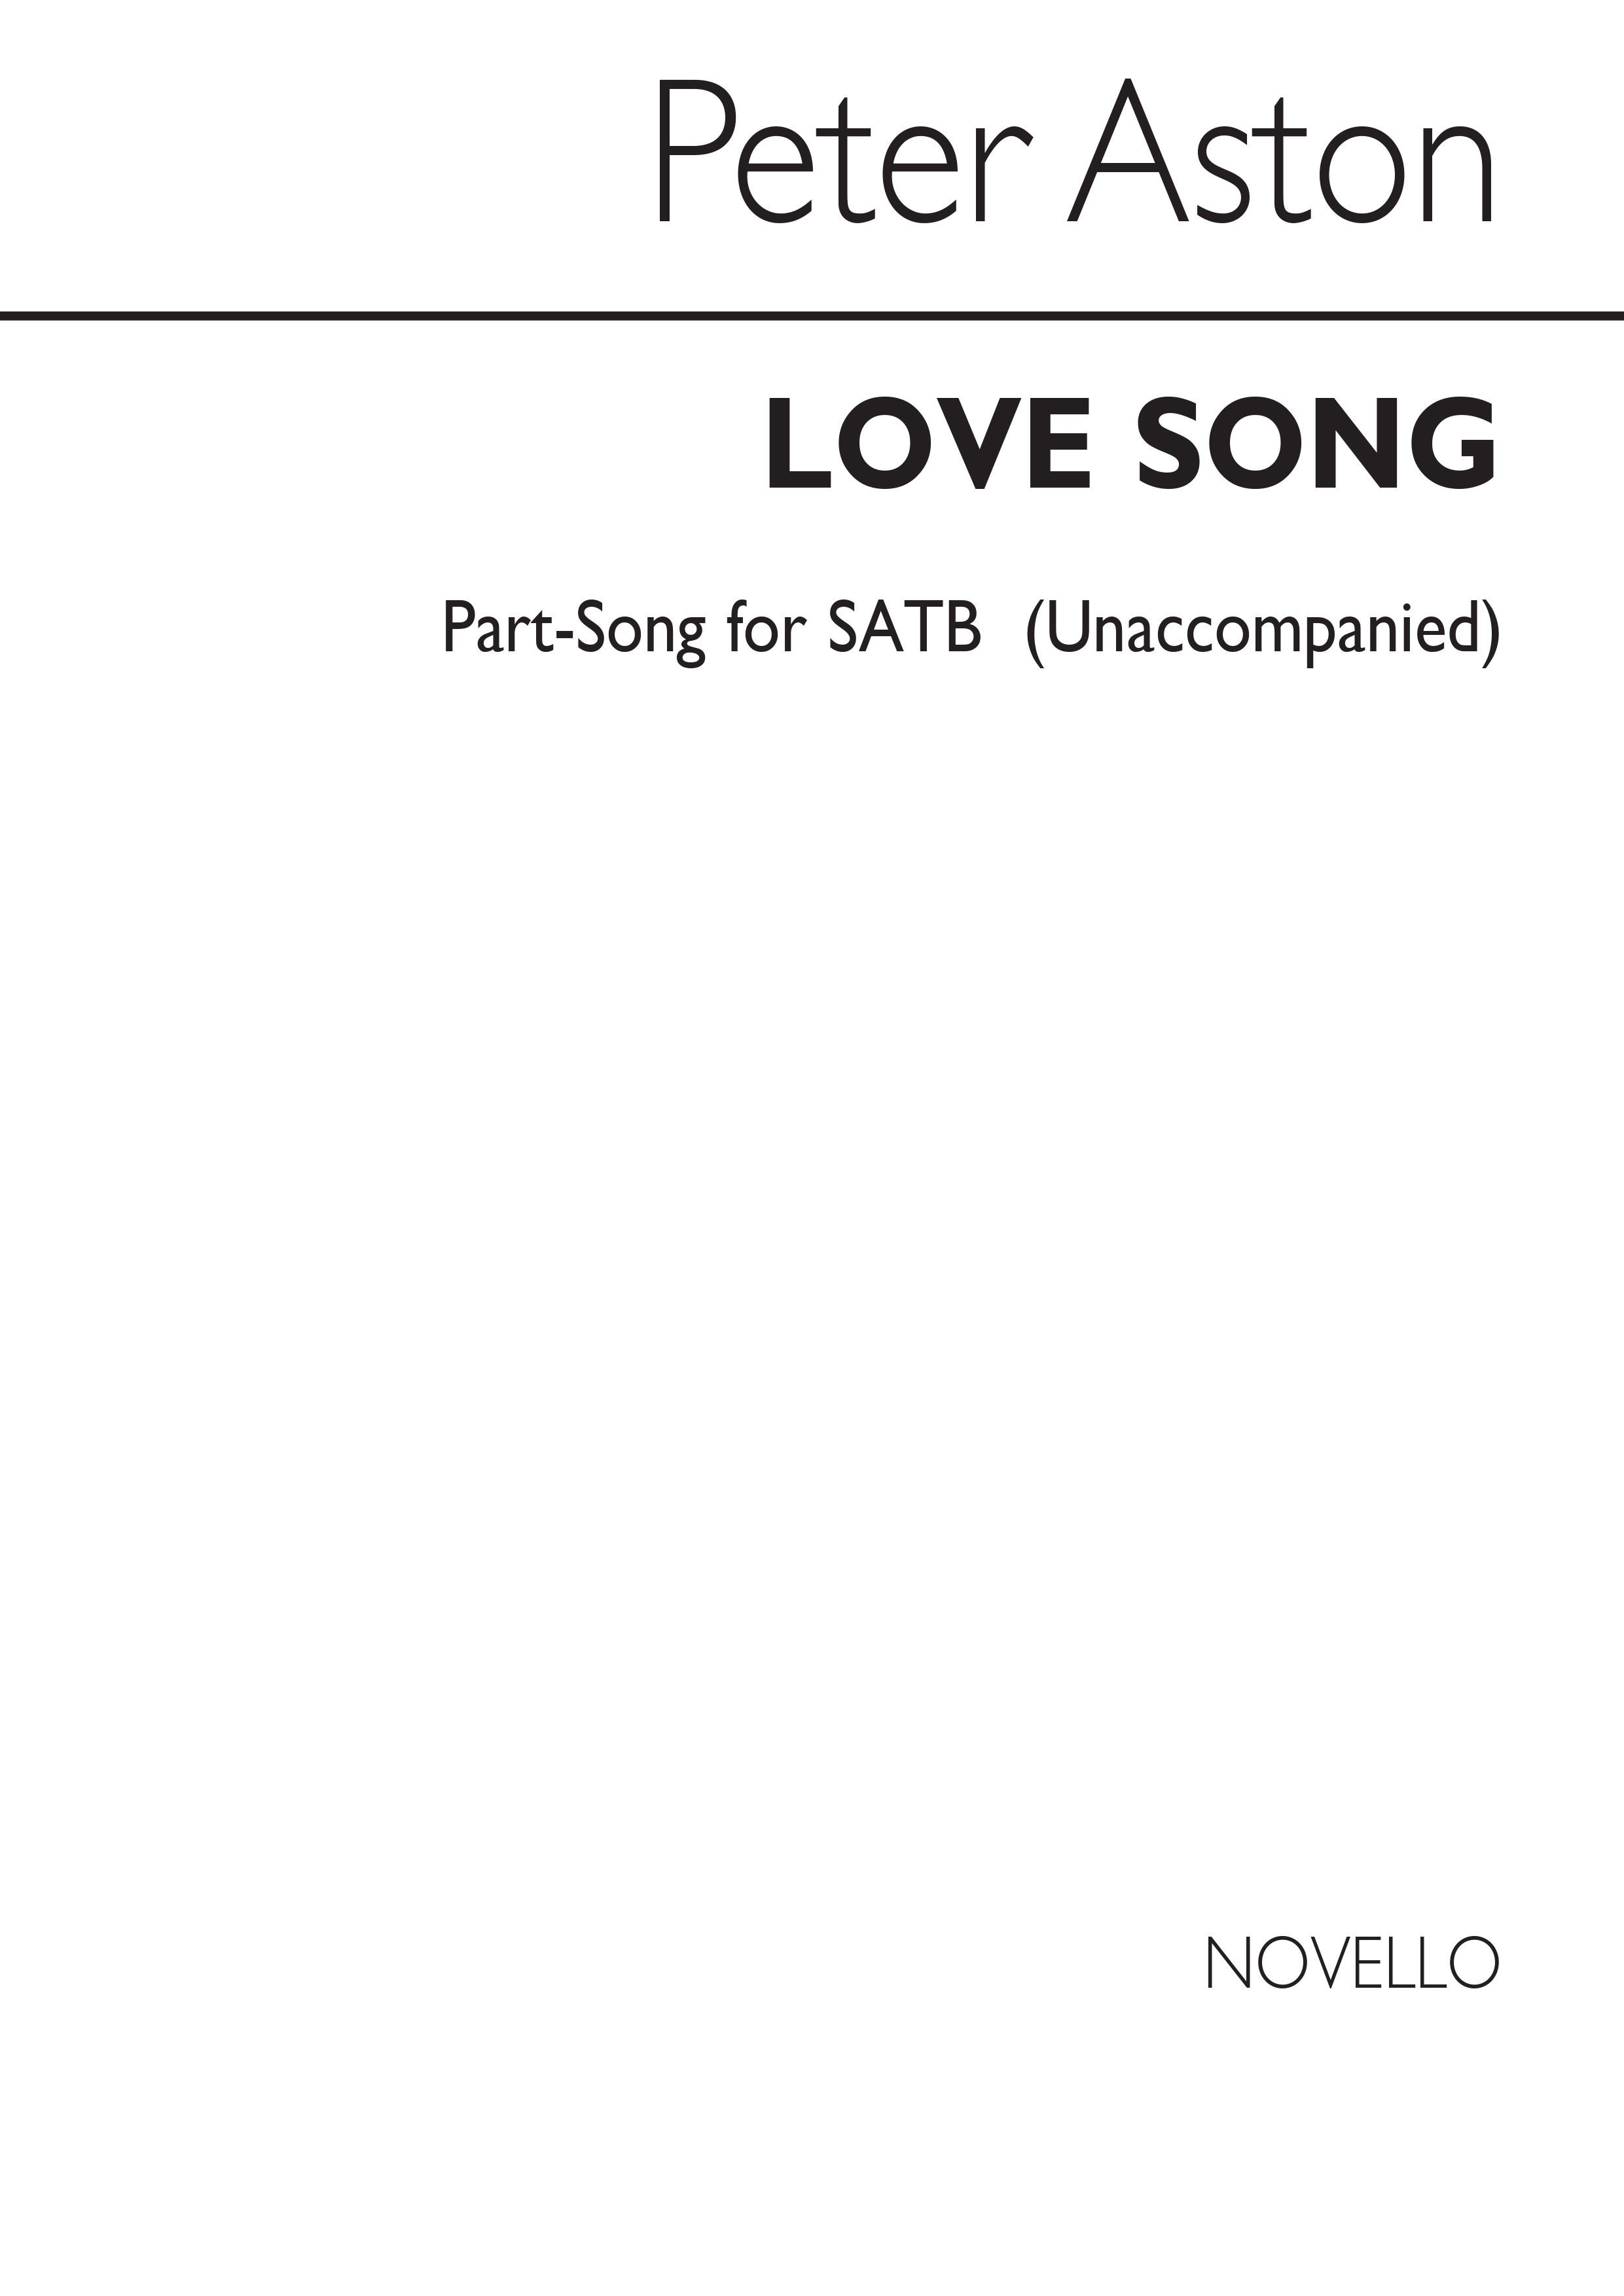 Peter Aston: Love Song for SATB Chorus